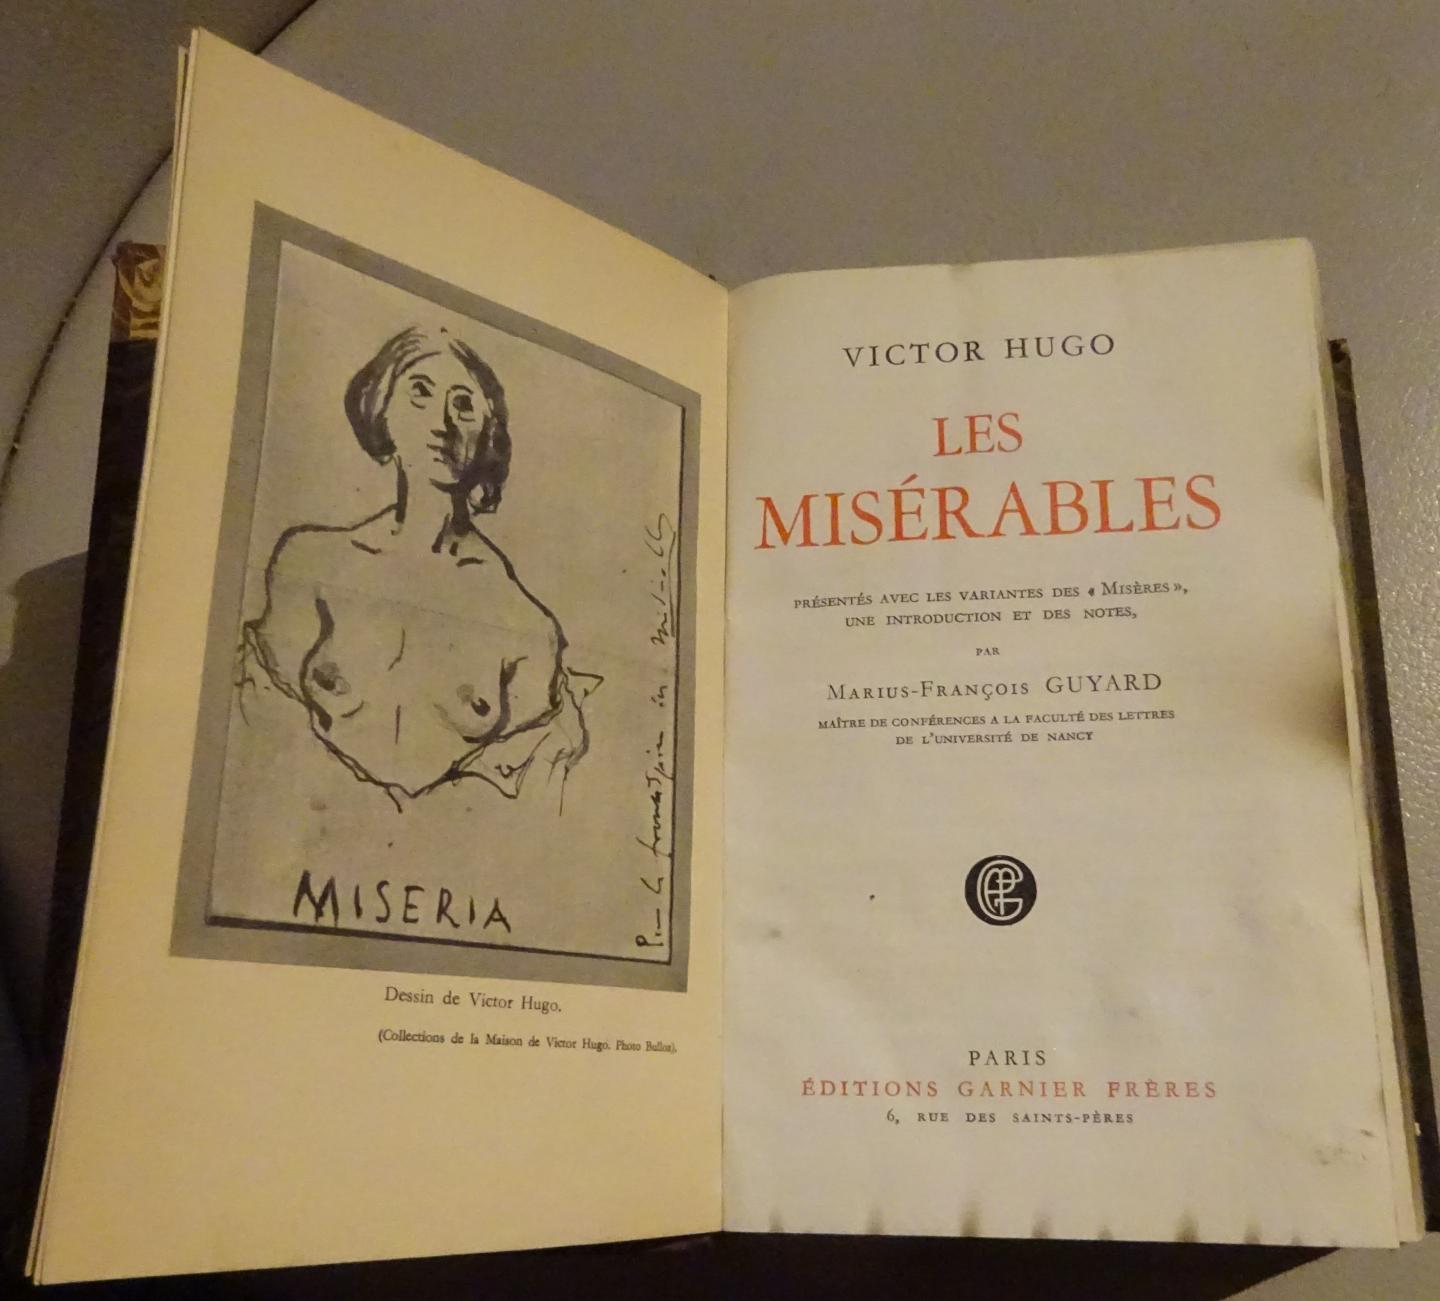 Victor, Hugo - Les Misérables présentés avec les variantes des "misères"